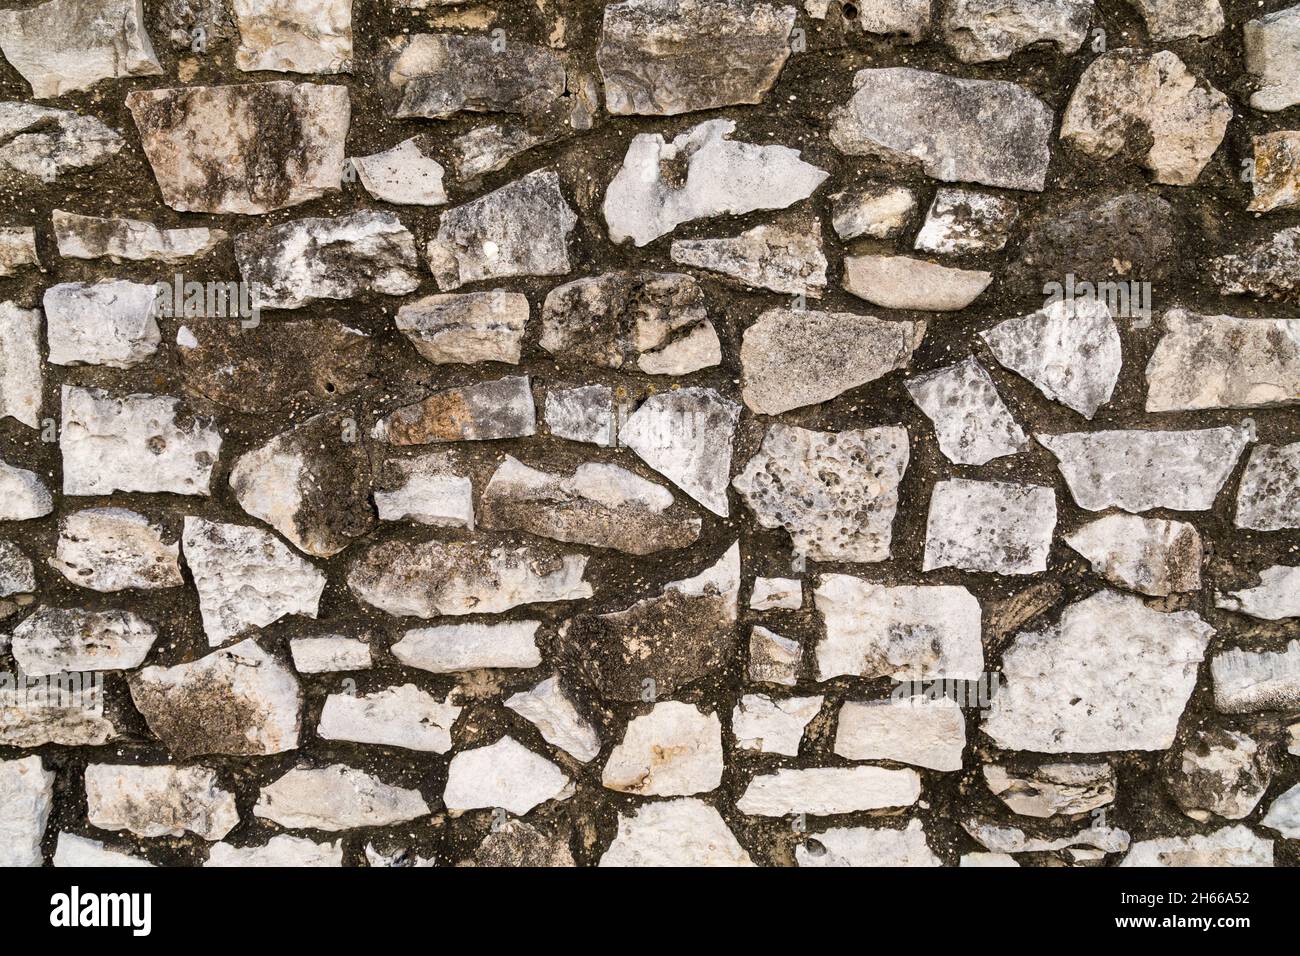 Stone wall at the Alamo, San Antonio Texas Stock Photo